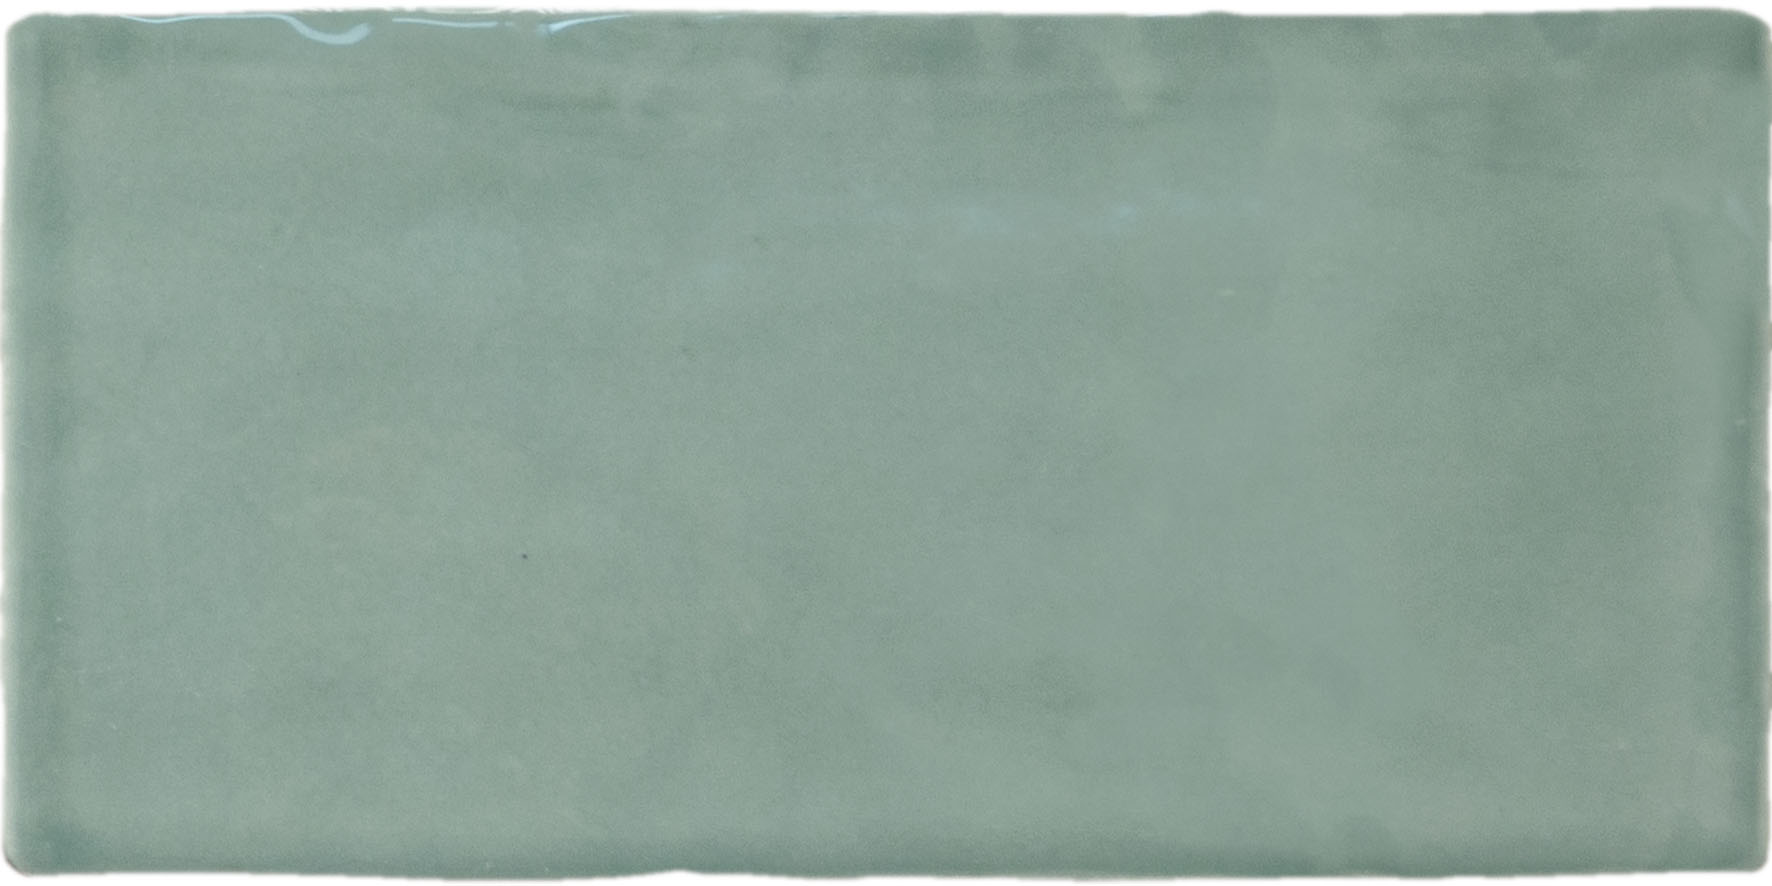 Catalea Gres Taby Metrofliesen Grün glänzend 7,5x15 cm  